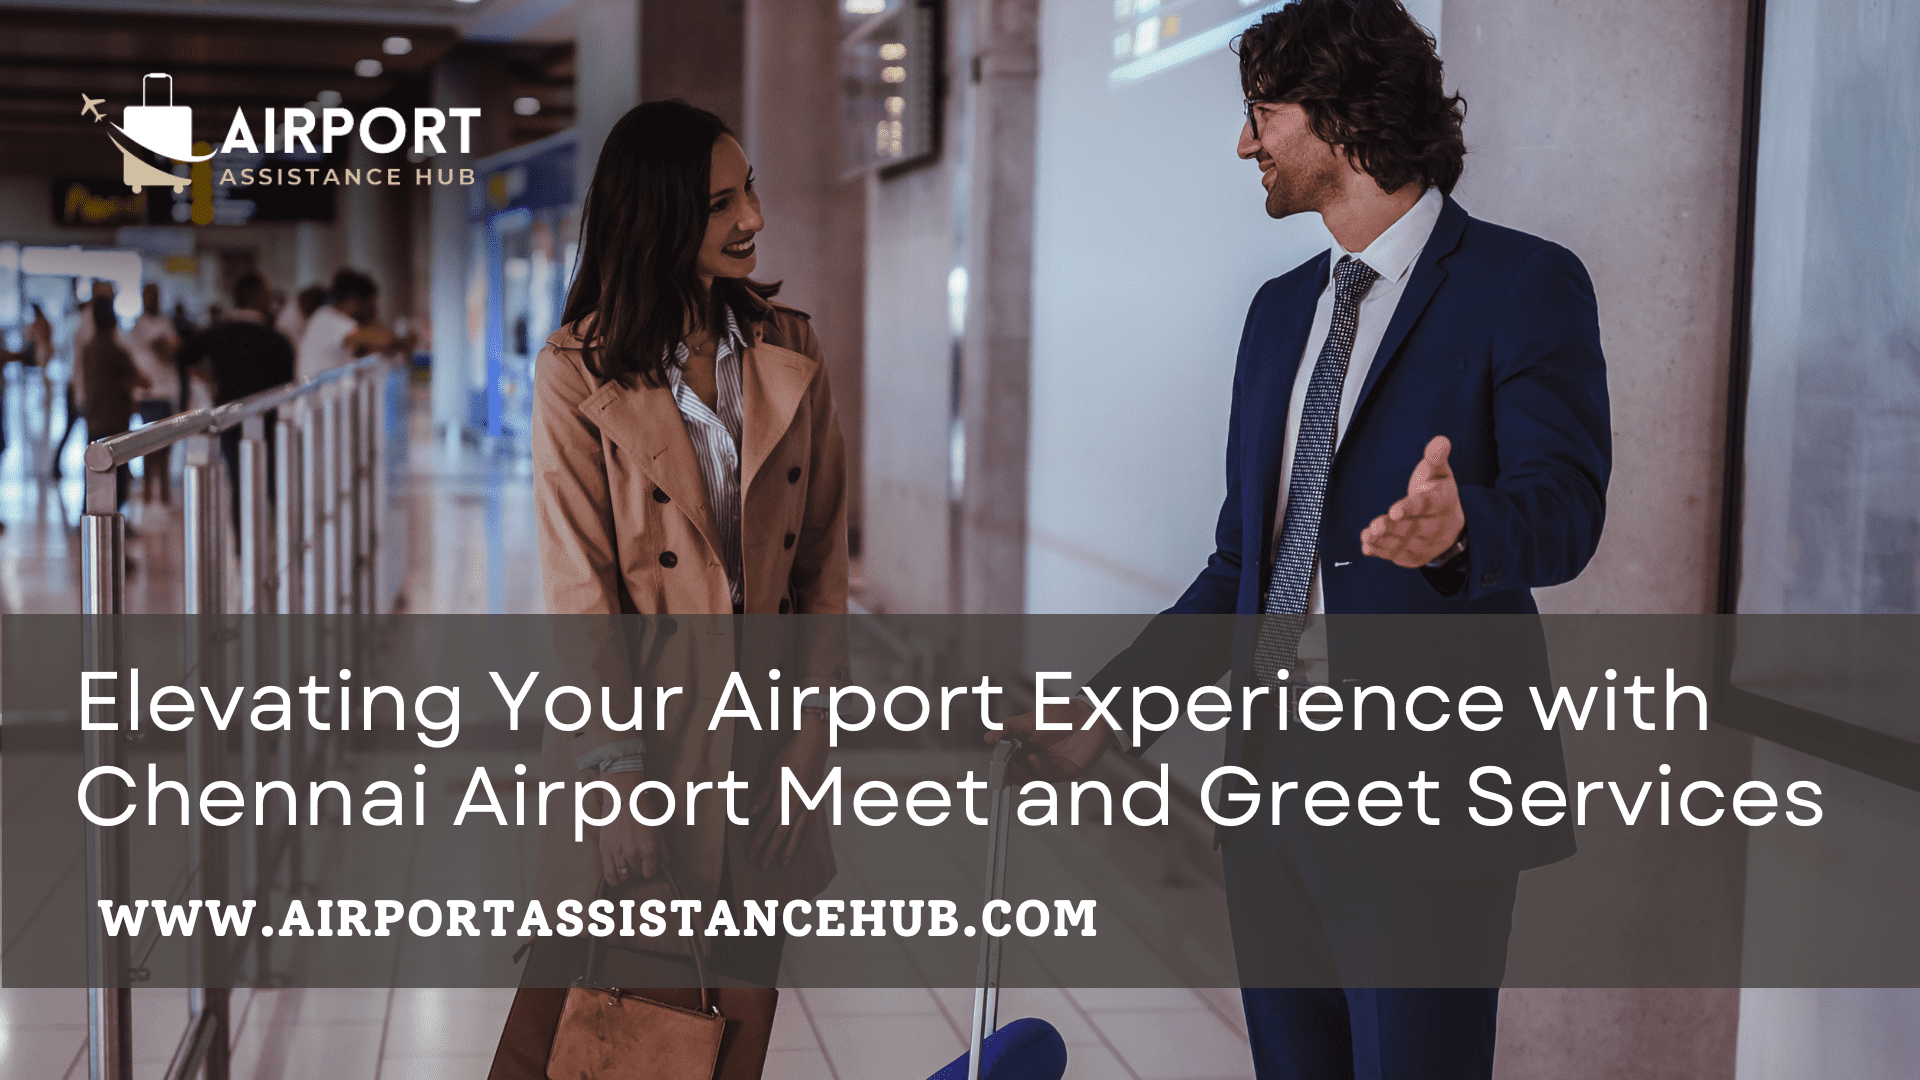 Chennai Airport Meet and Greet service